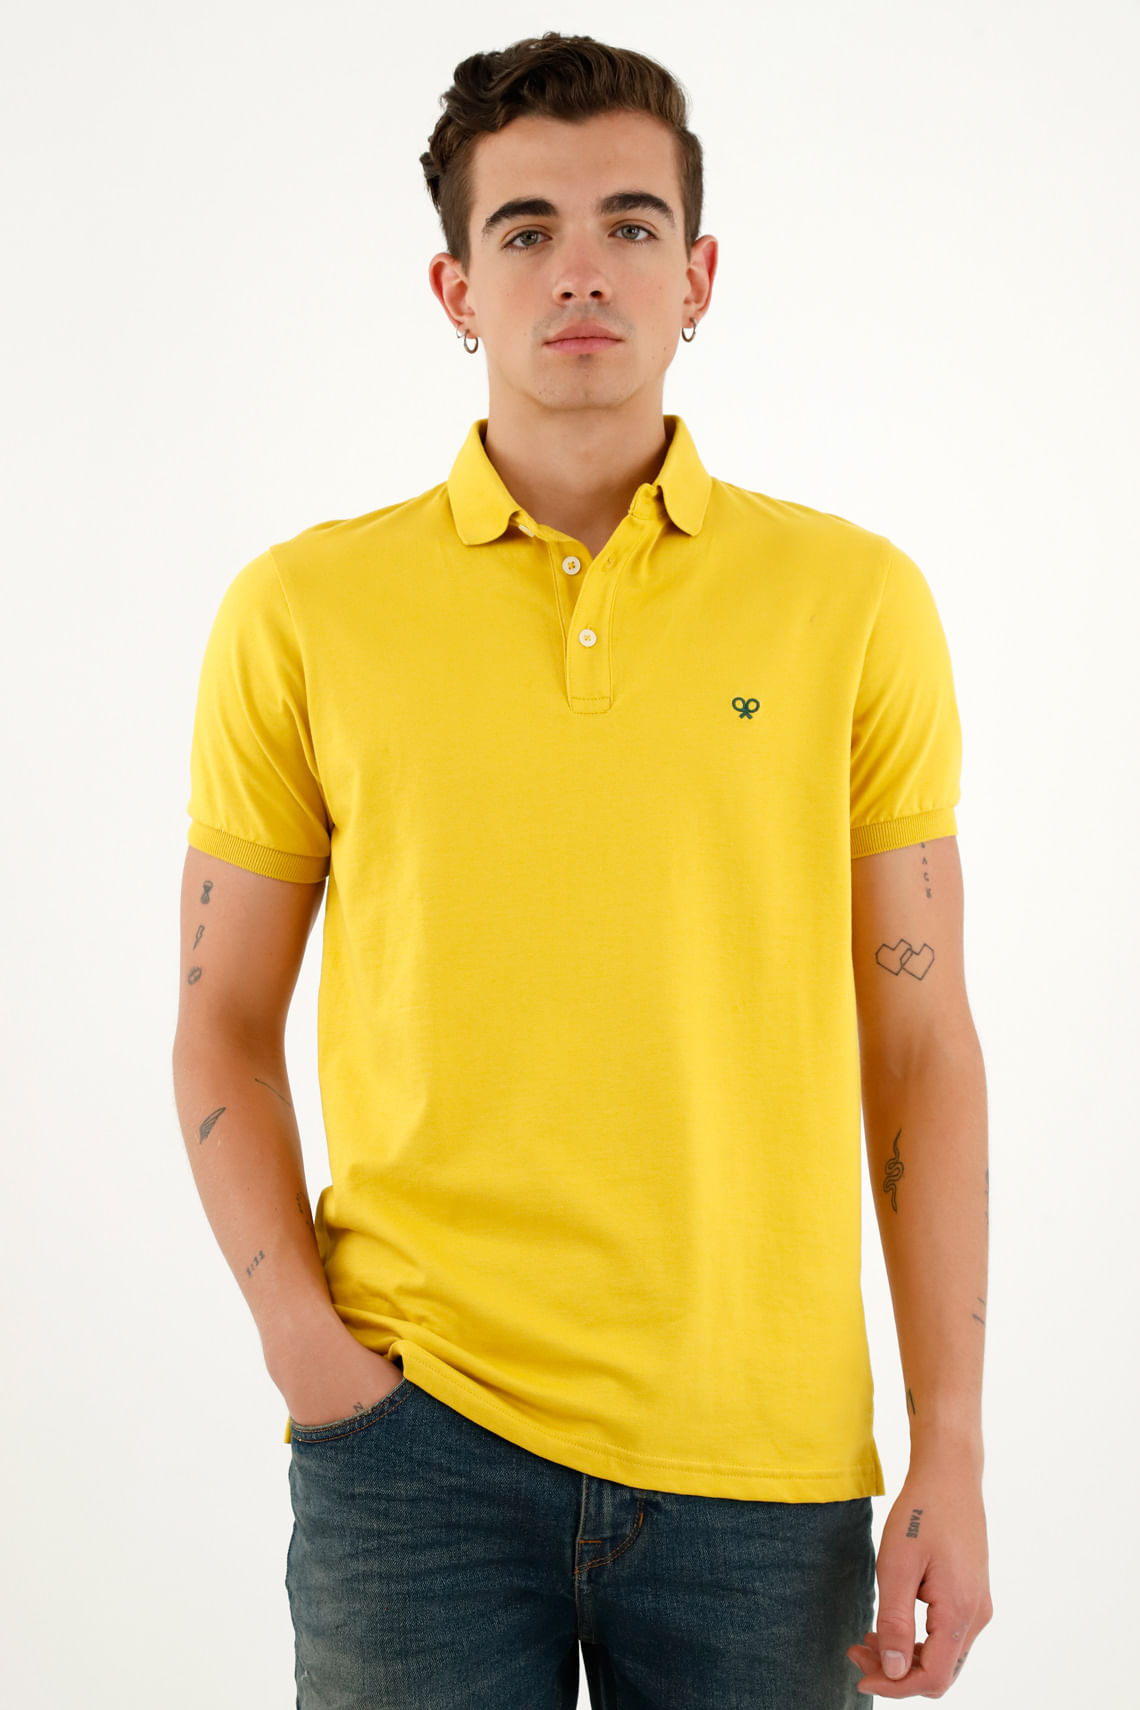 Camisetas Amarillas, Polos y Más